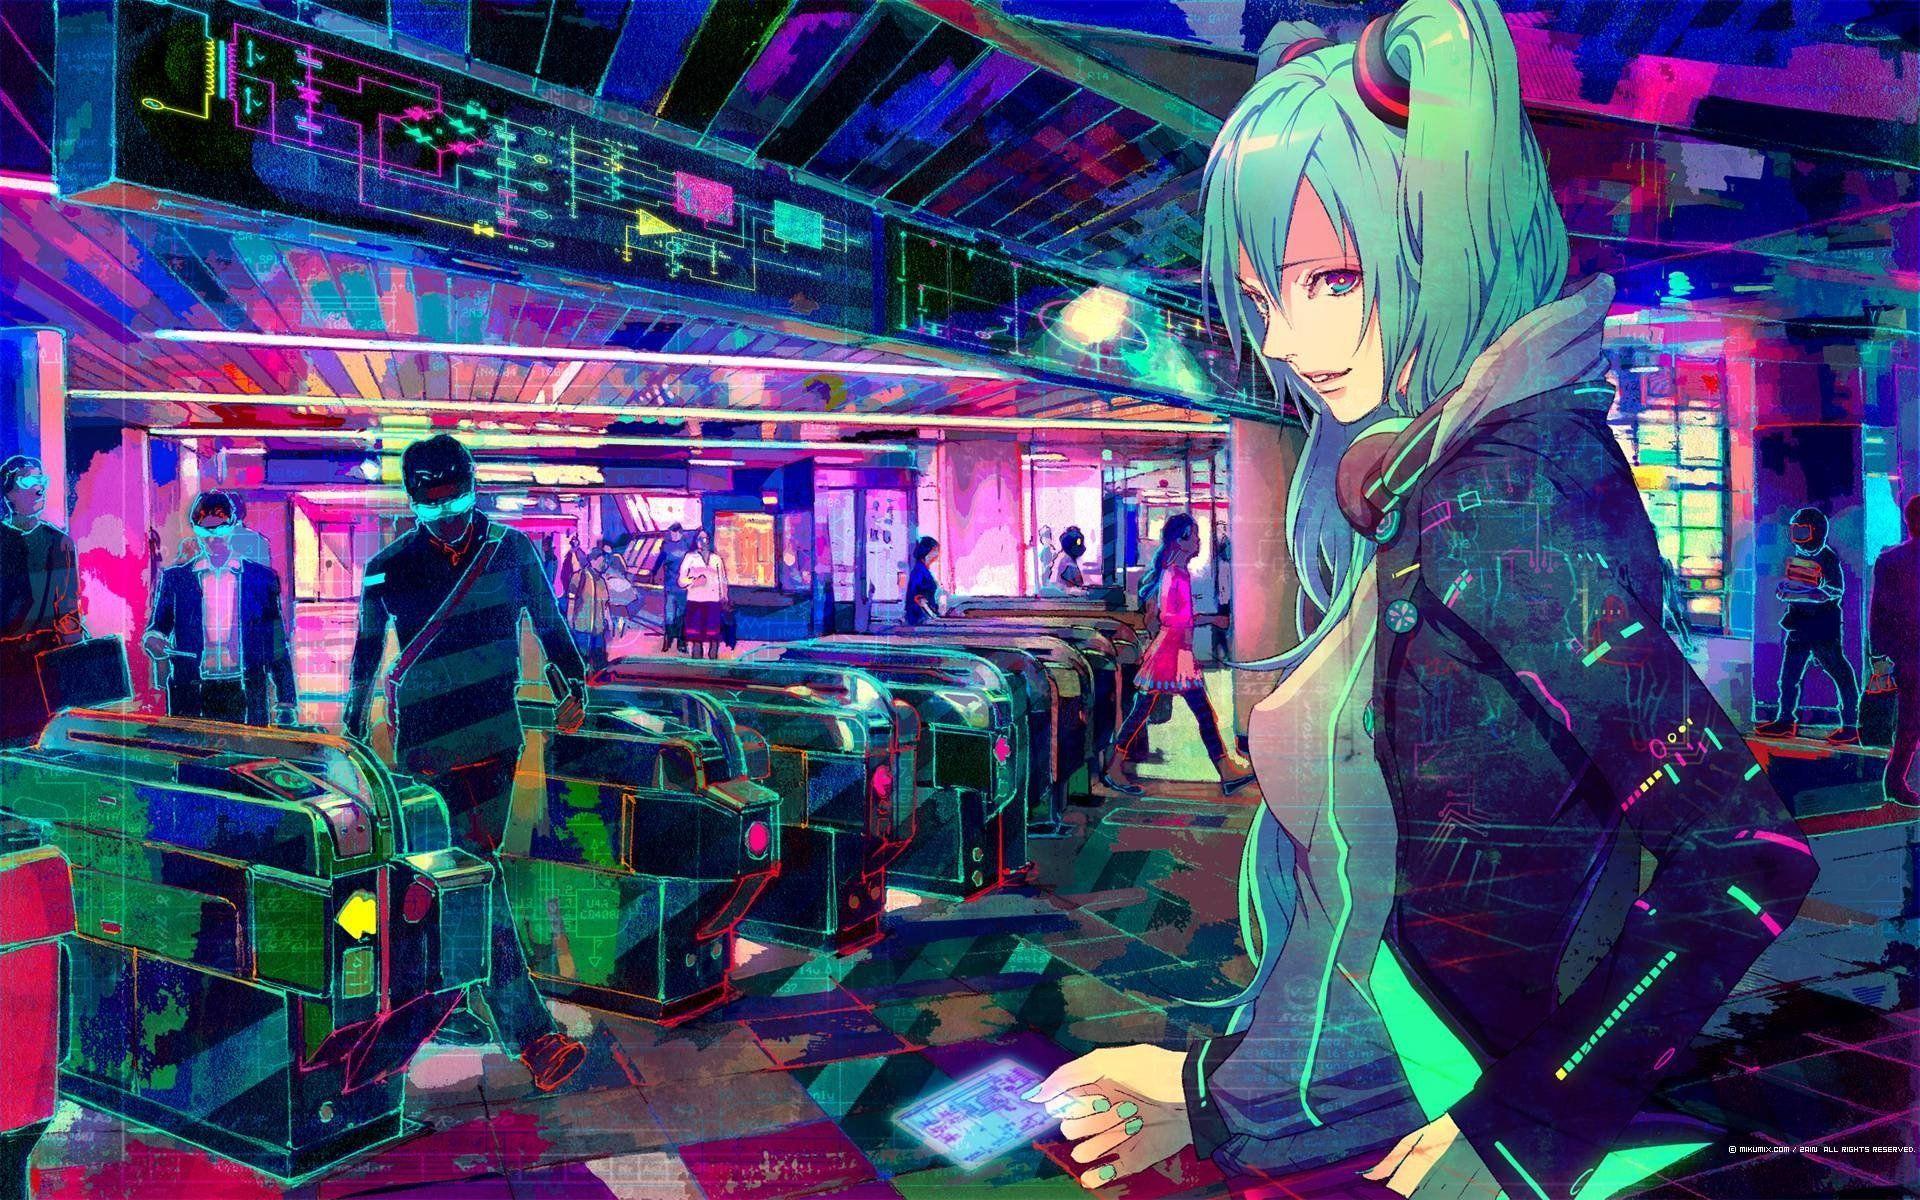 Aesthetic Cyberpunk Girl Desktop Wallpaper - Cyberpunk Wallpaper